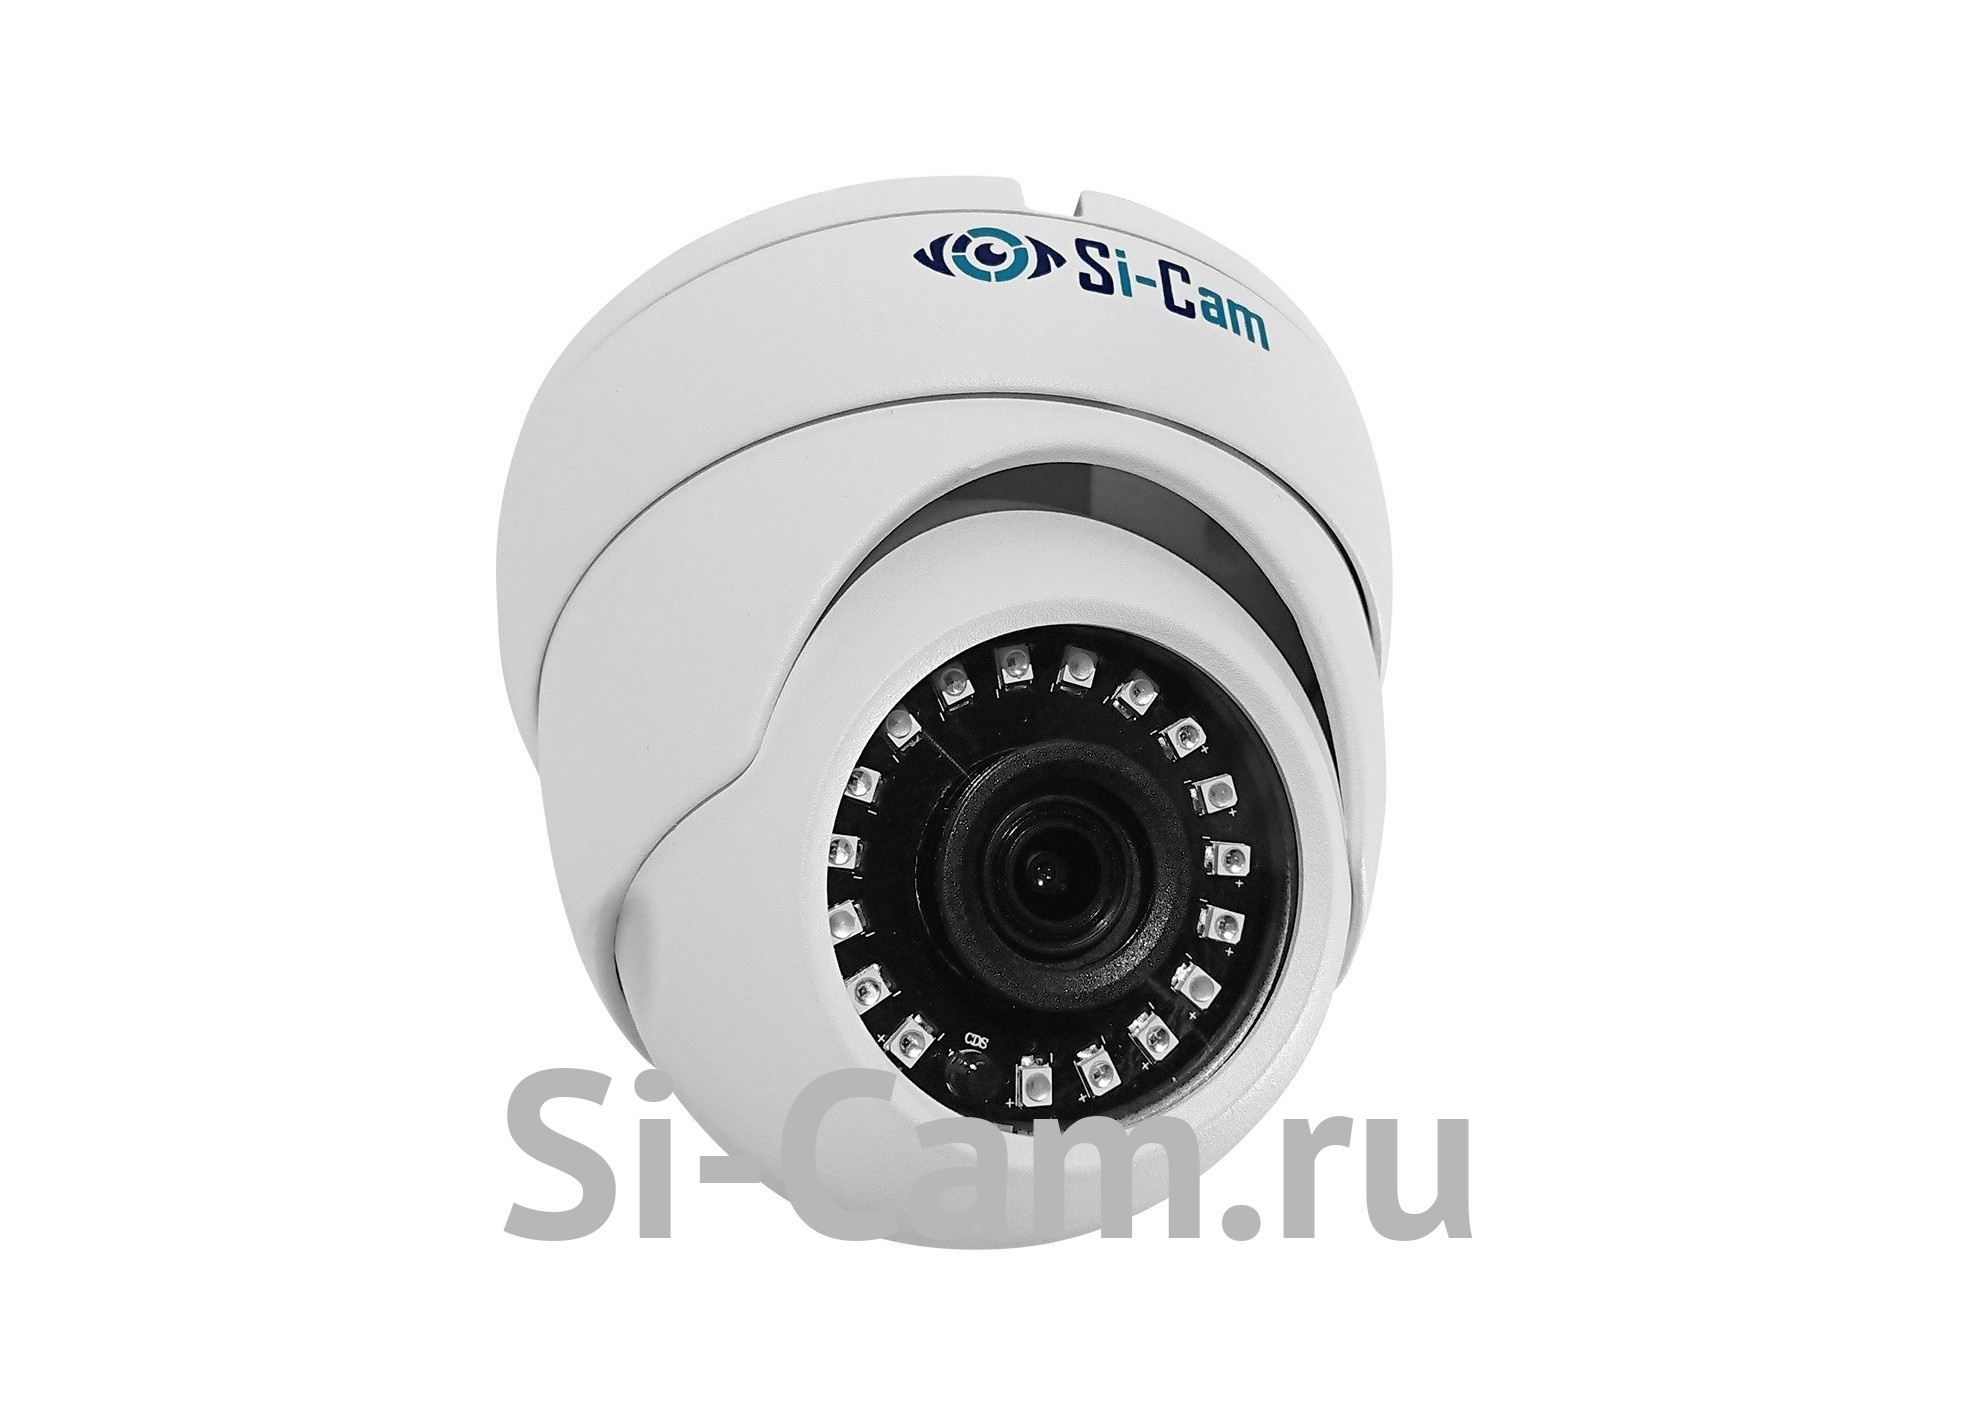 Si-Cam SC-DS202F IR Купольная уличная антивандальная IP видеокамера, 60fps